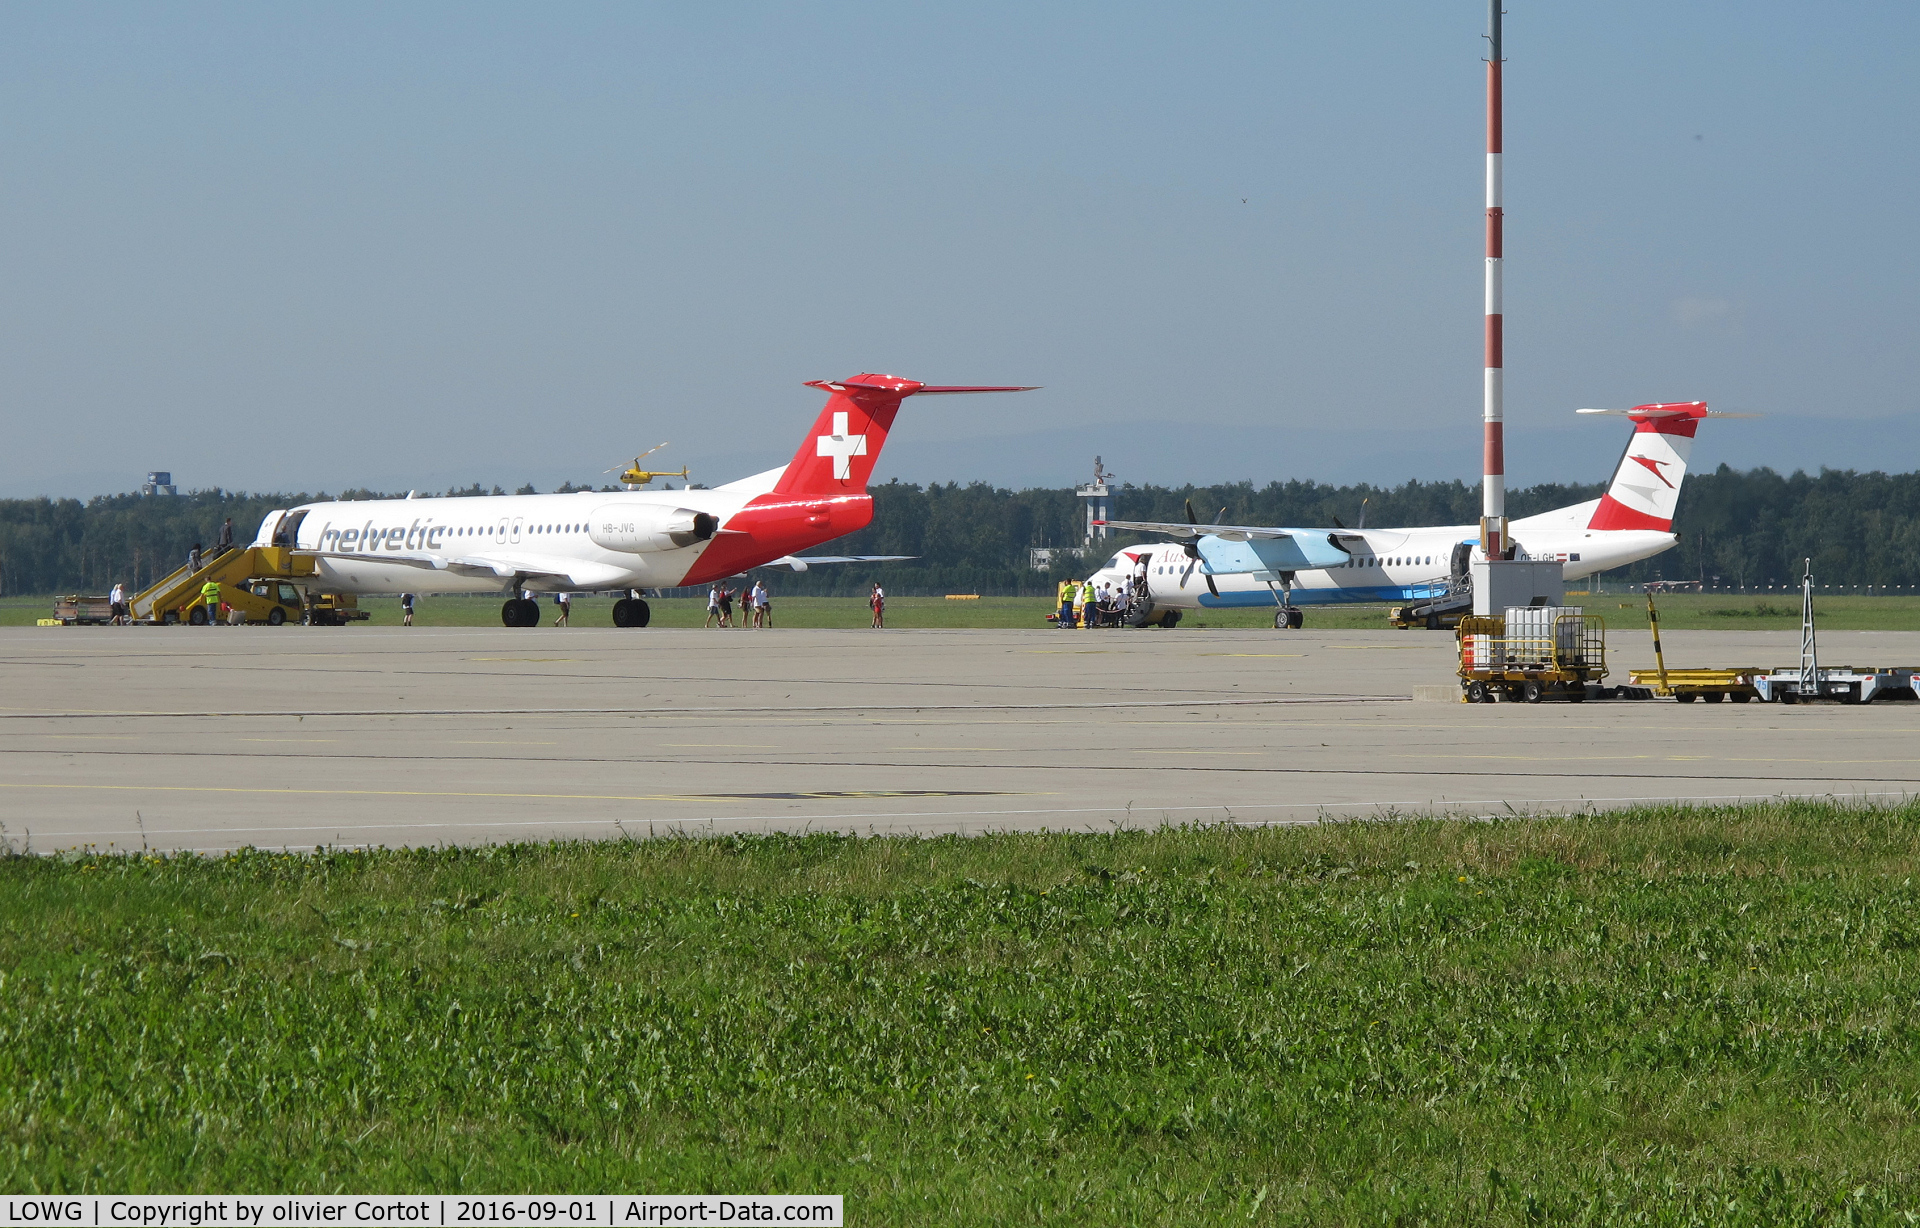 Graz Airport, Graz Austria (LOWG) - Swiss coummuter loading passengers